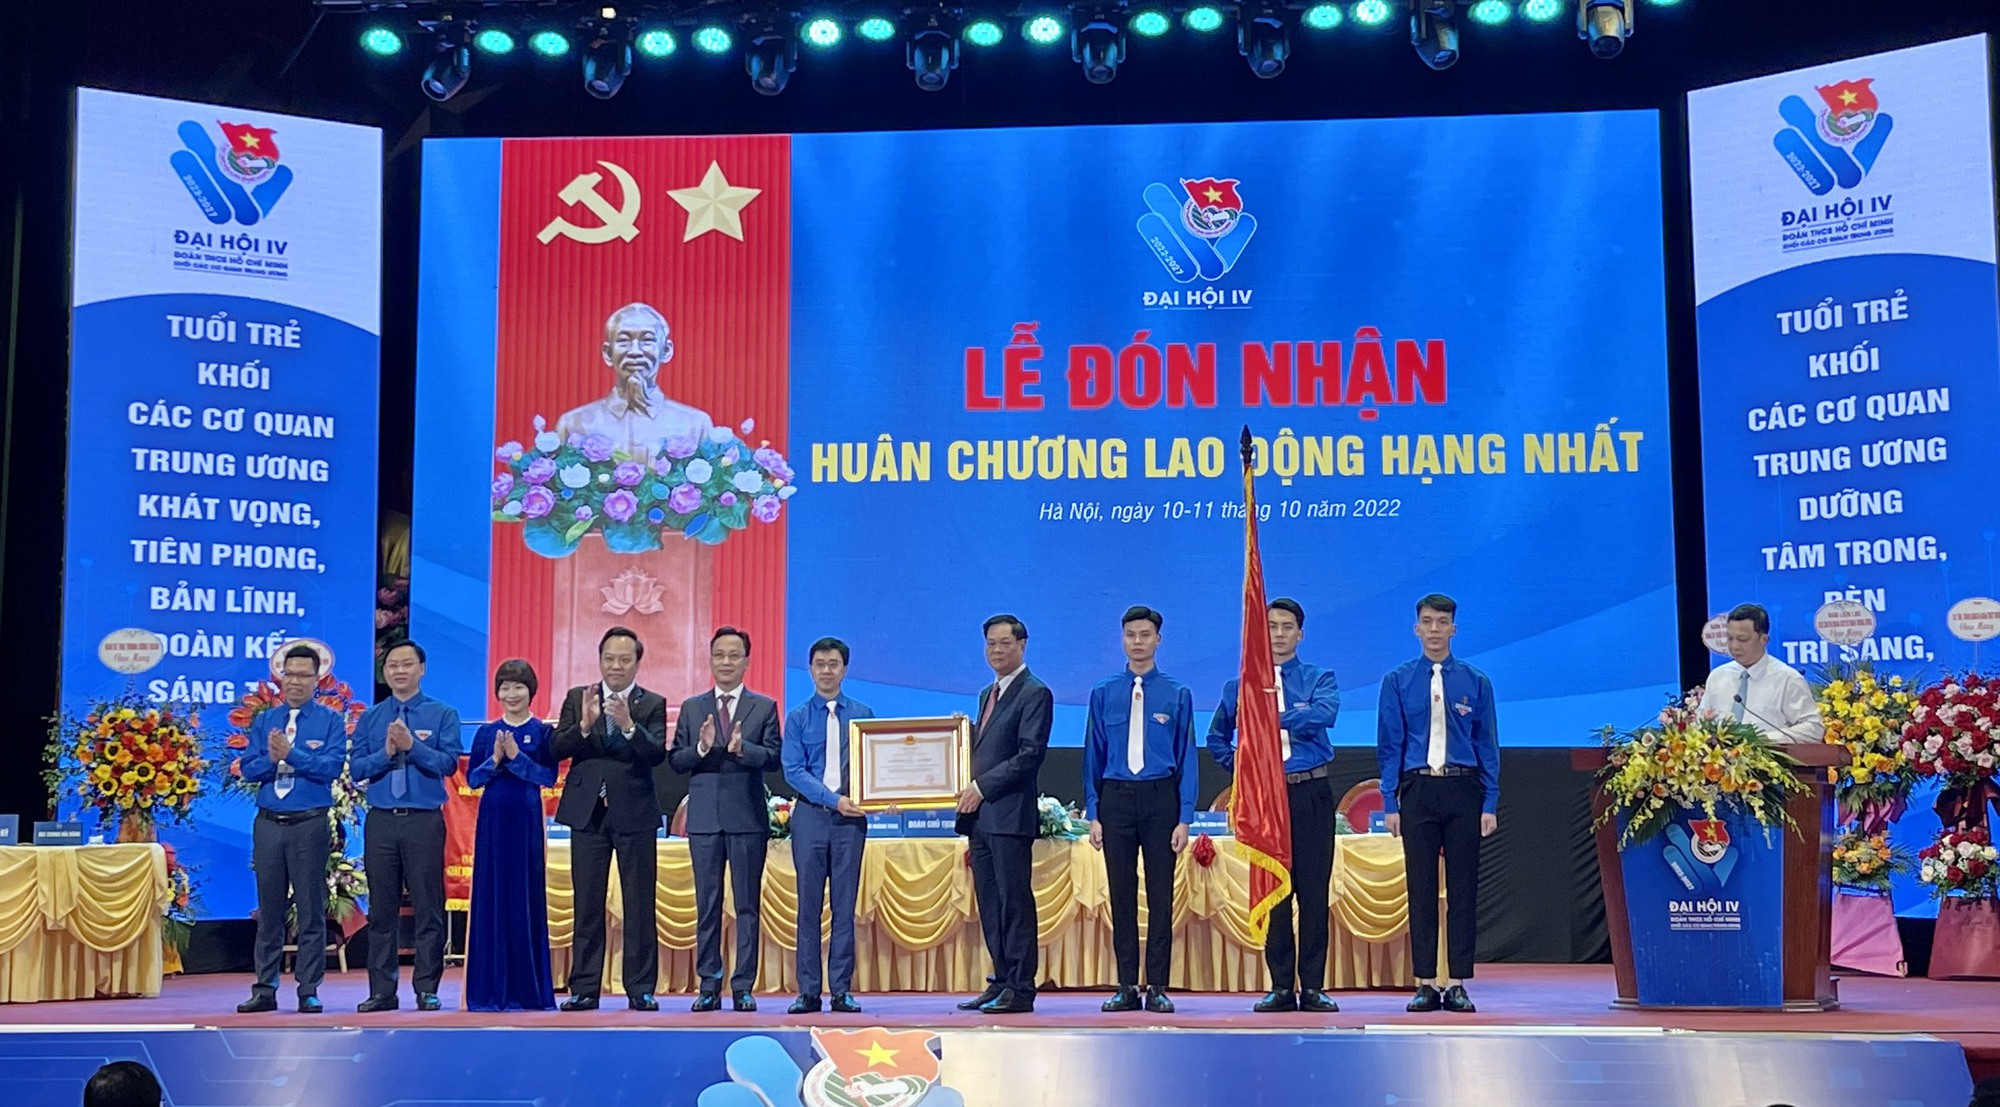 Bí thư Nguyễn Giao Linh trúng Ủy viên BCH Đoàn Khối các cơ quan Trung ương - Ảnh 2.